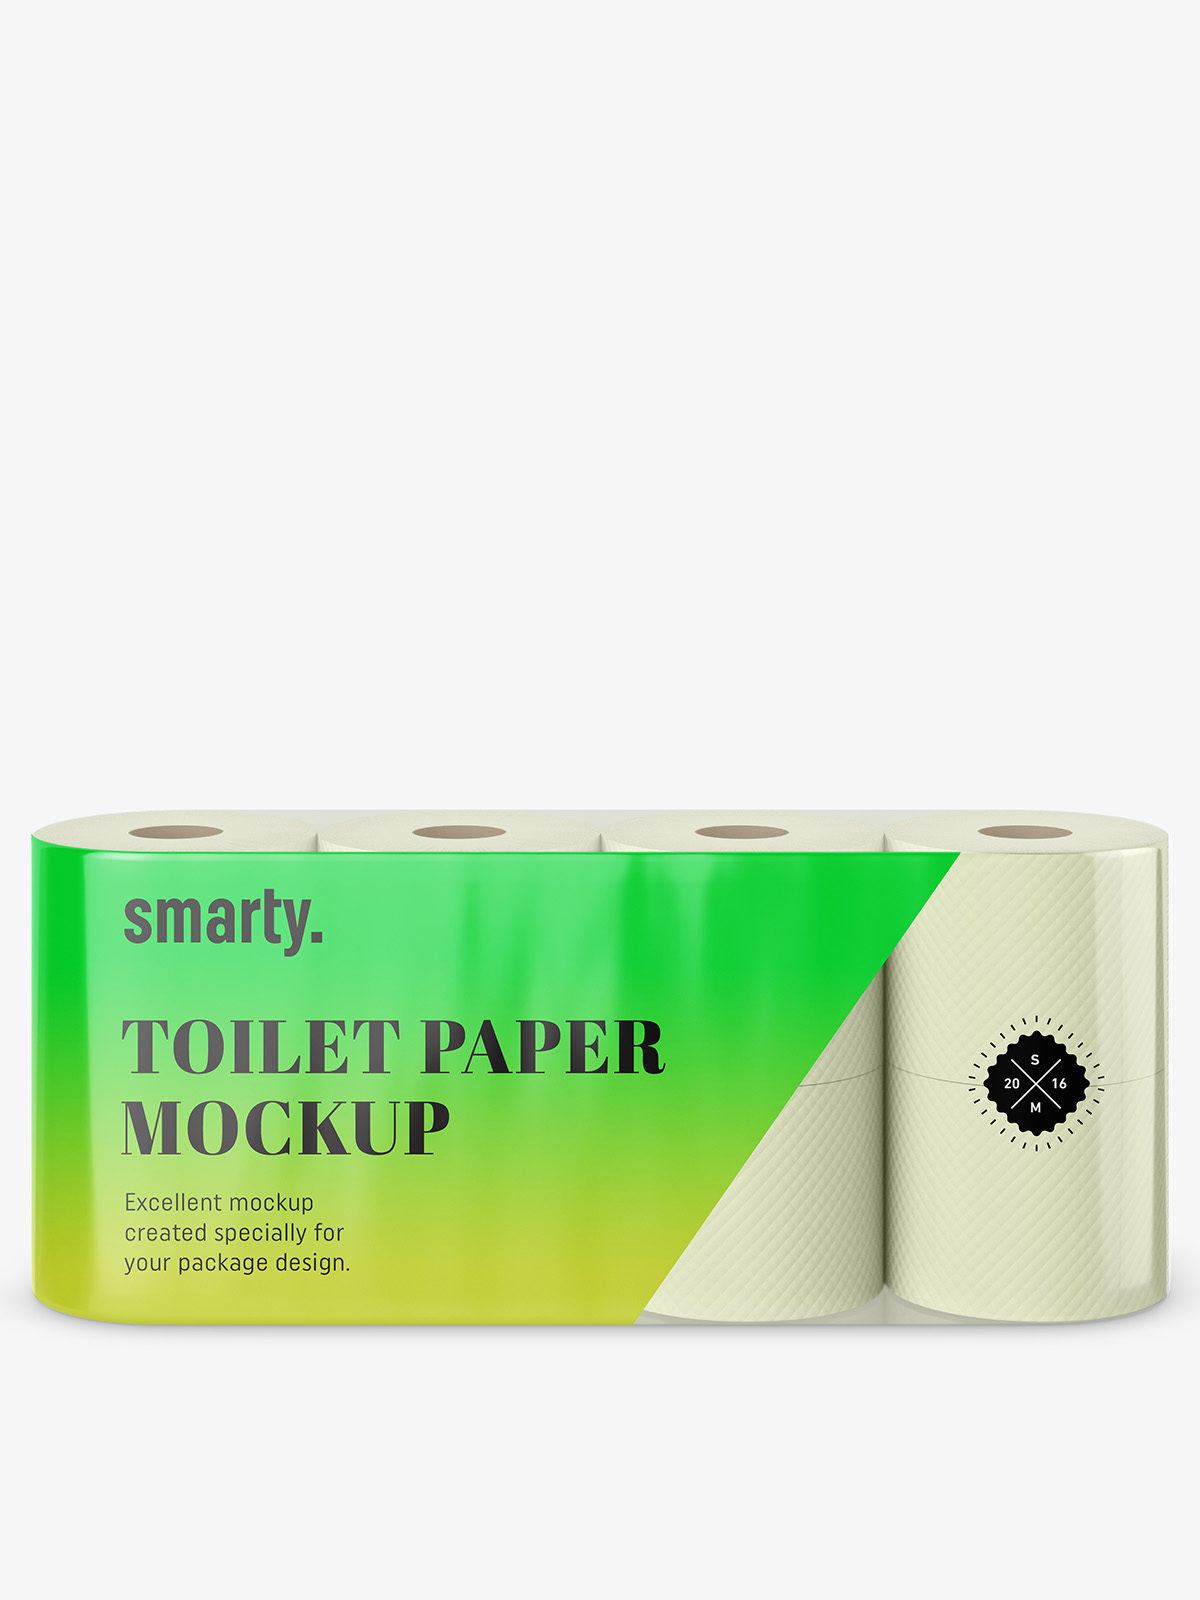 Download Toilet paper mockup - Smarty Mockups